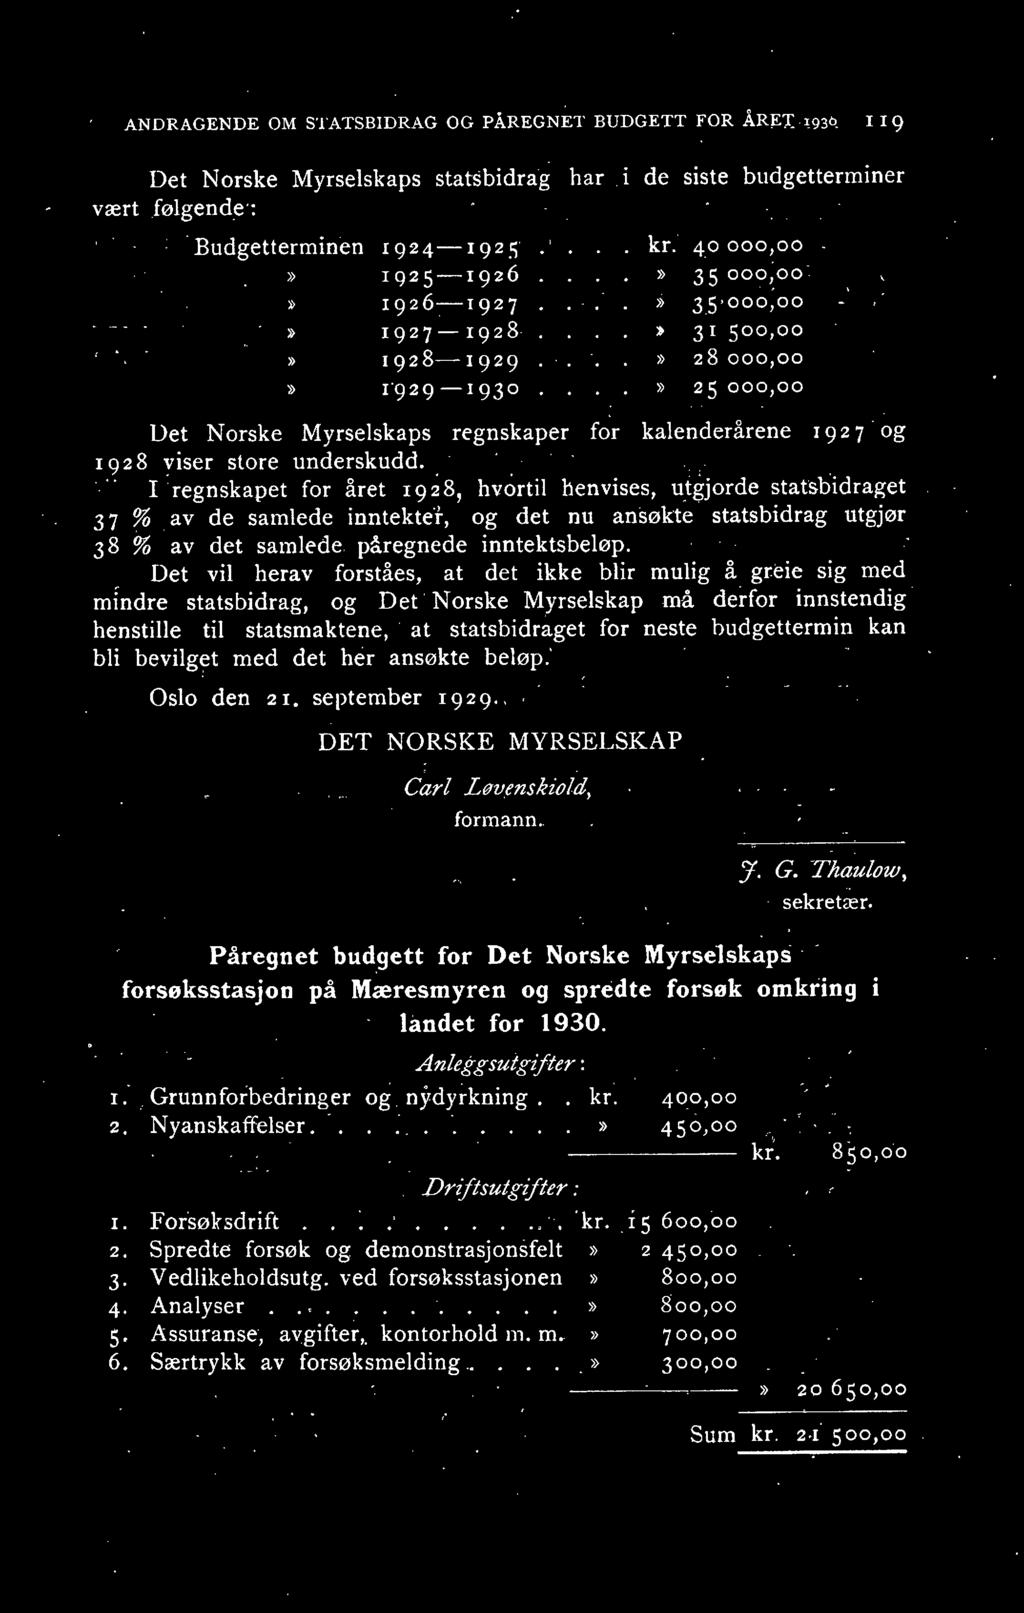 "')) 25 000,00 Det Norske Myrselskaps regnskaper f ~r kalenderårene, 1 9 2 7 og 1928 viser store underskudd.. '.